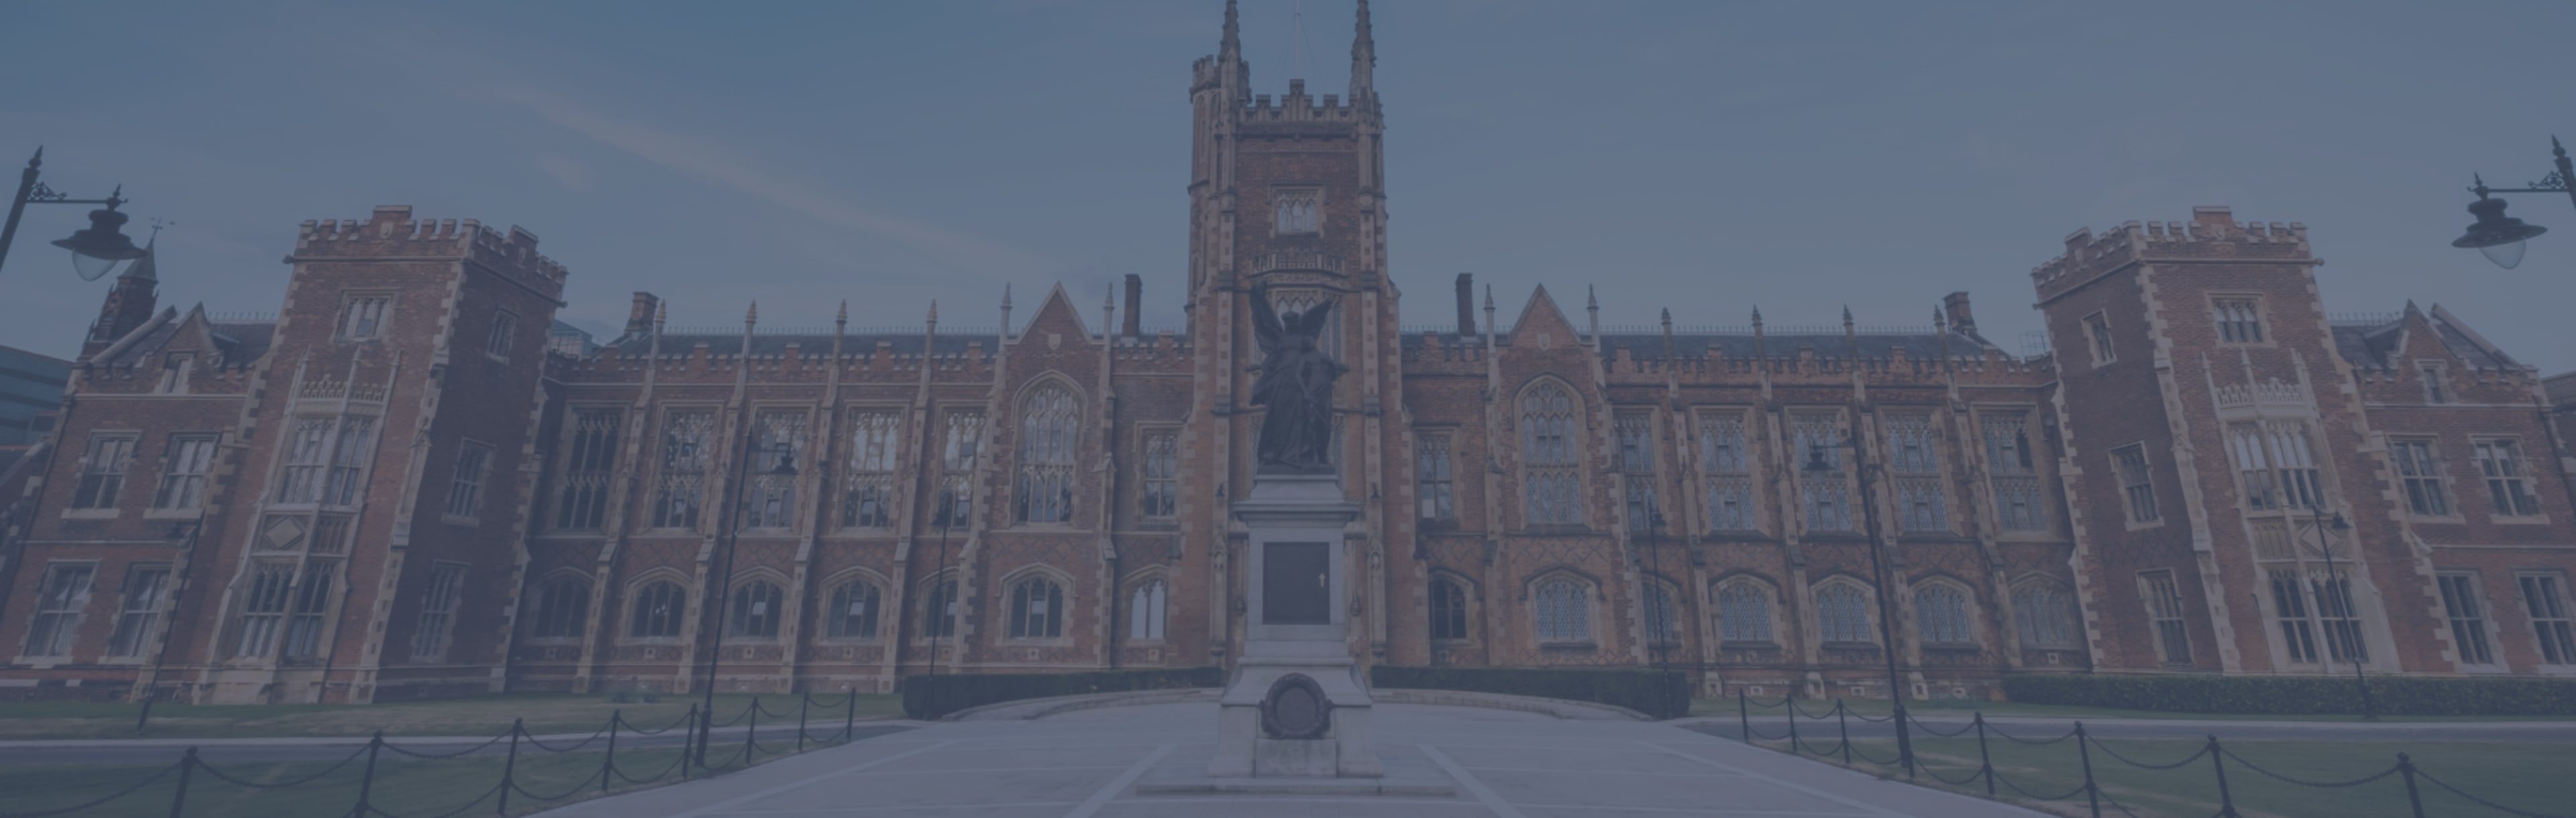 Queen's University Belfast PgDip v násilí, terorismu a bezpečnosti